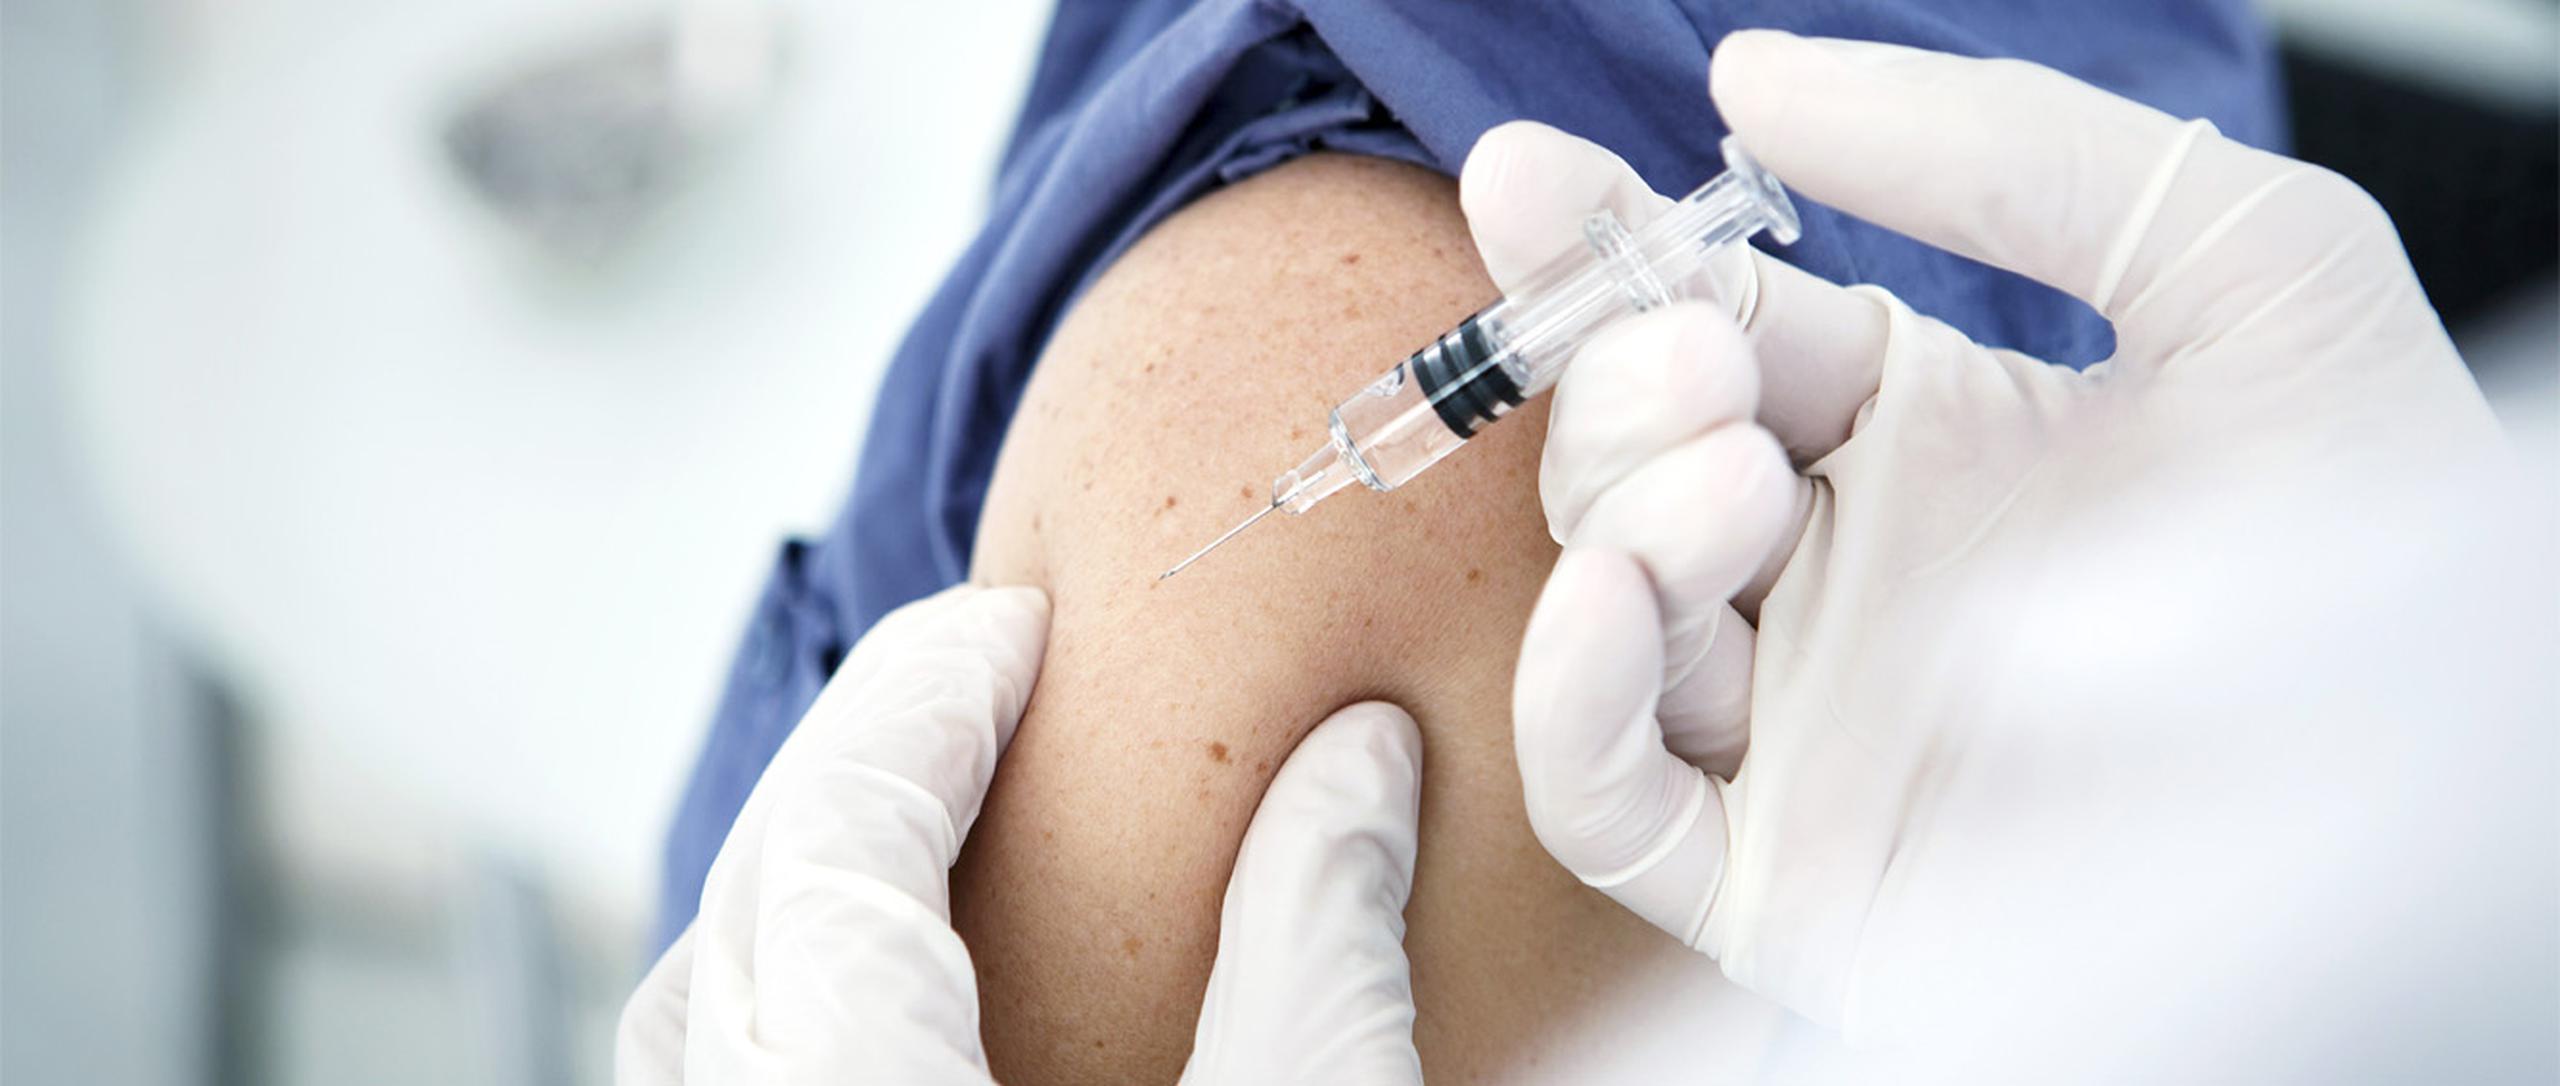 El sarampión se puede propagar si llega a una comunidad con grupos de personas que no hayan sido vacunadas. (Shutterstock)